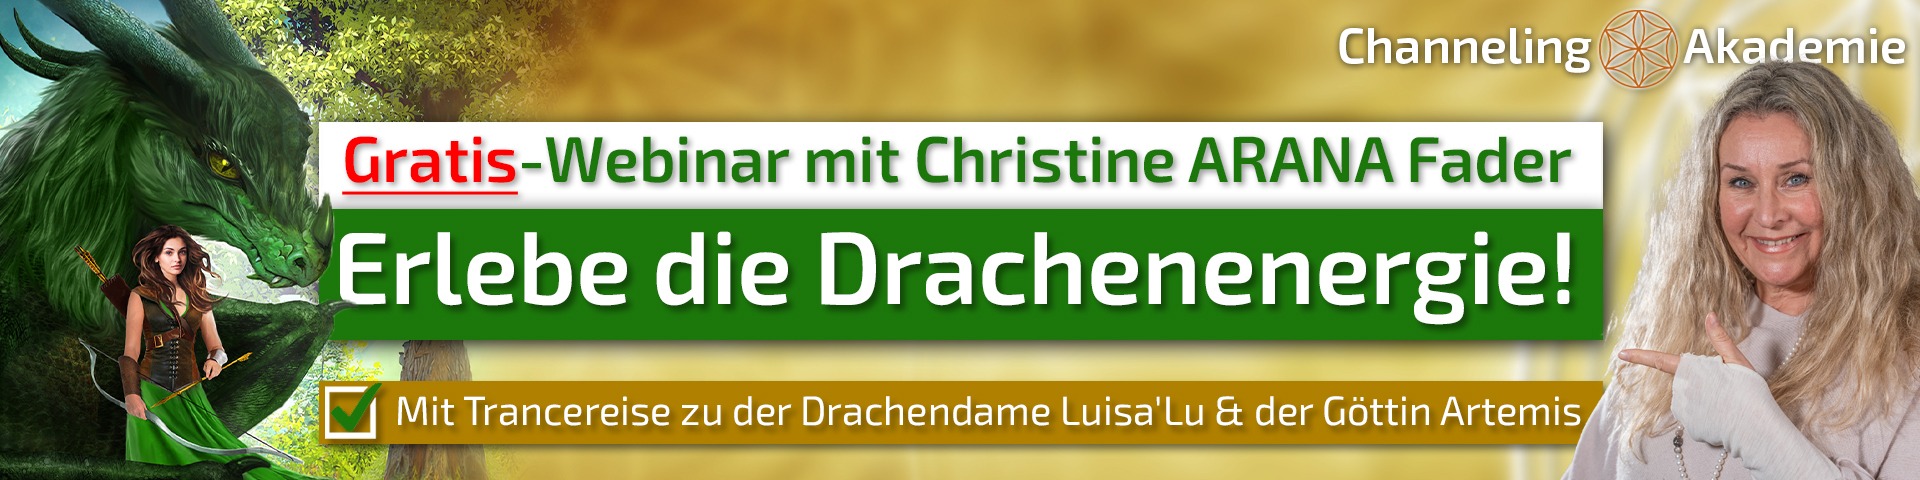 Erlebe die Drachenenergie - Webinar - Christina ARANA Fader